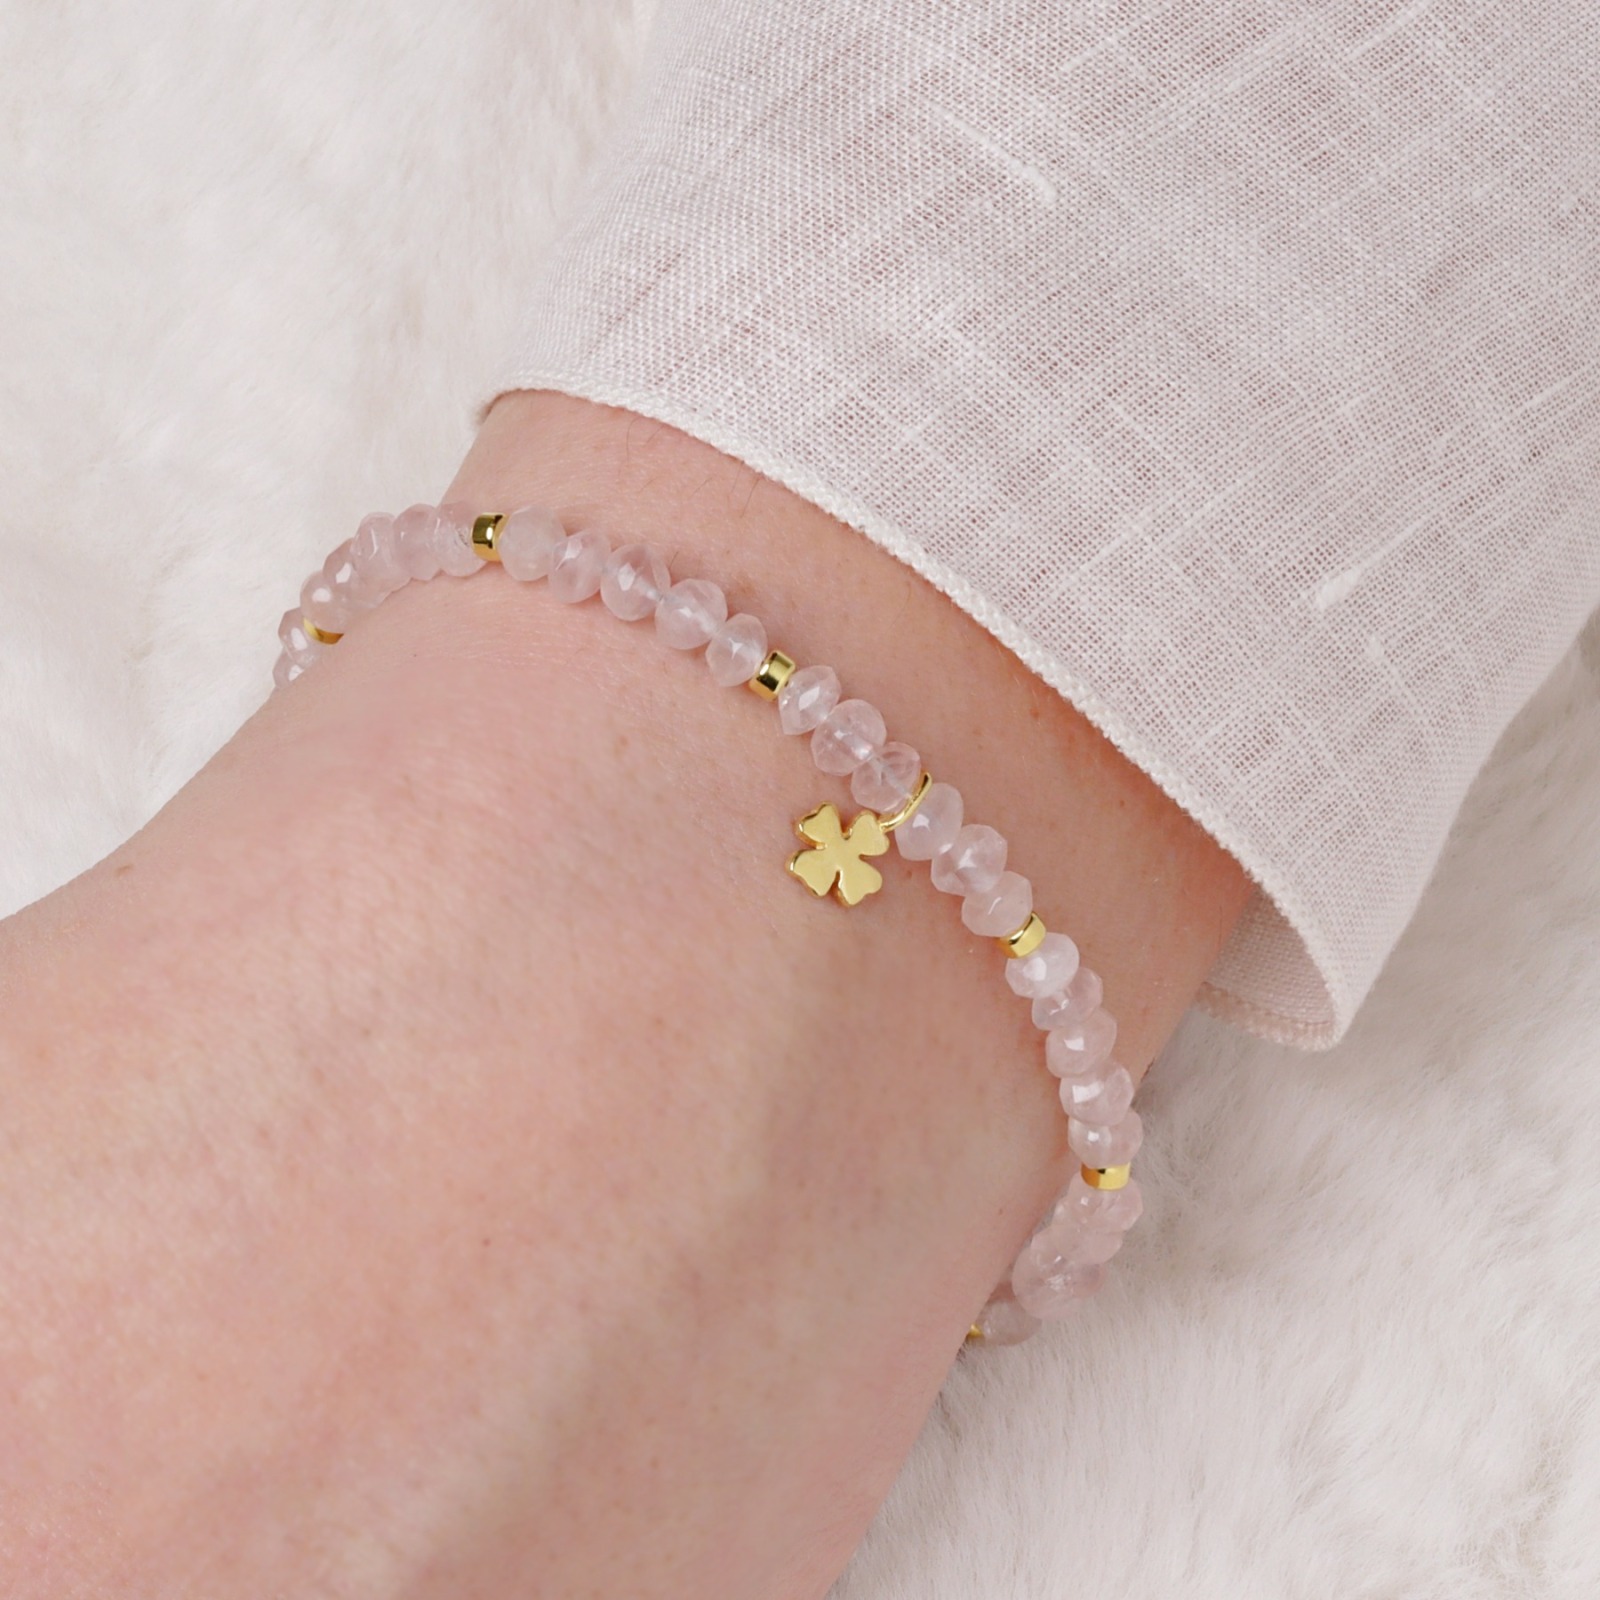 Glücks-Armband Damen aus echtem Rosenquarz mit Kleeblatt, Glücksbringer-Geschenk für Frauen und M